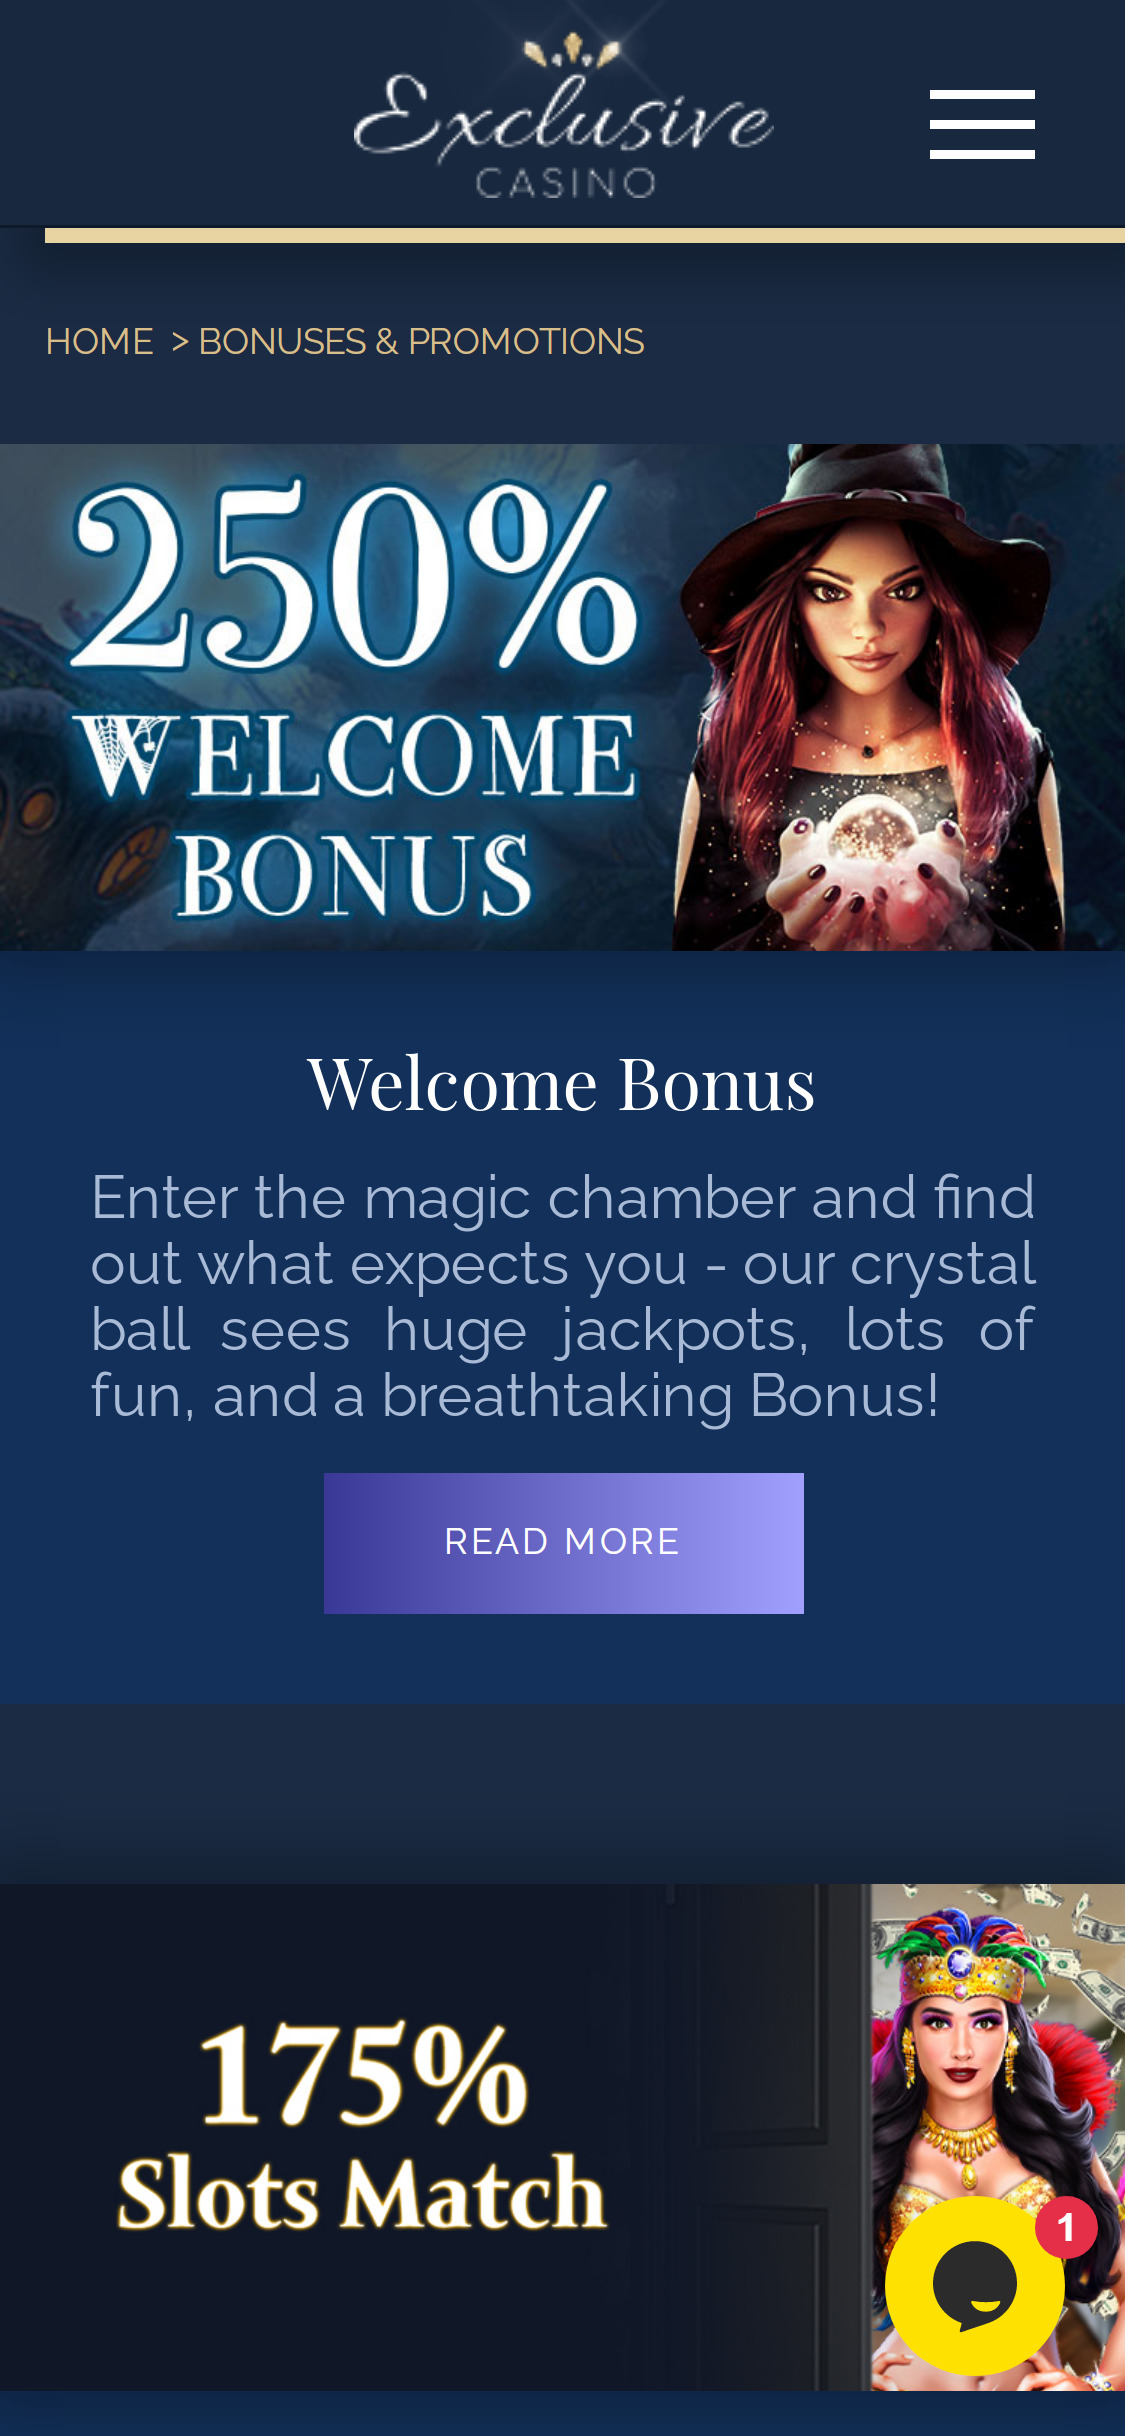 Exclusive Casino Mobile No Deposit Bonus Review